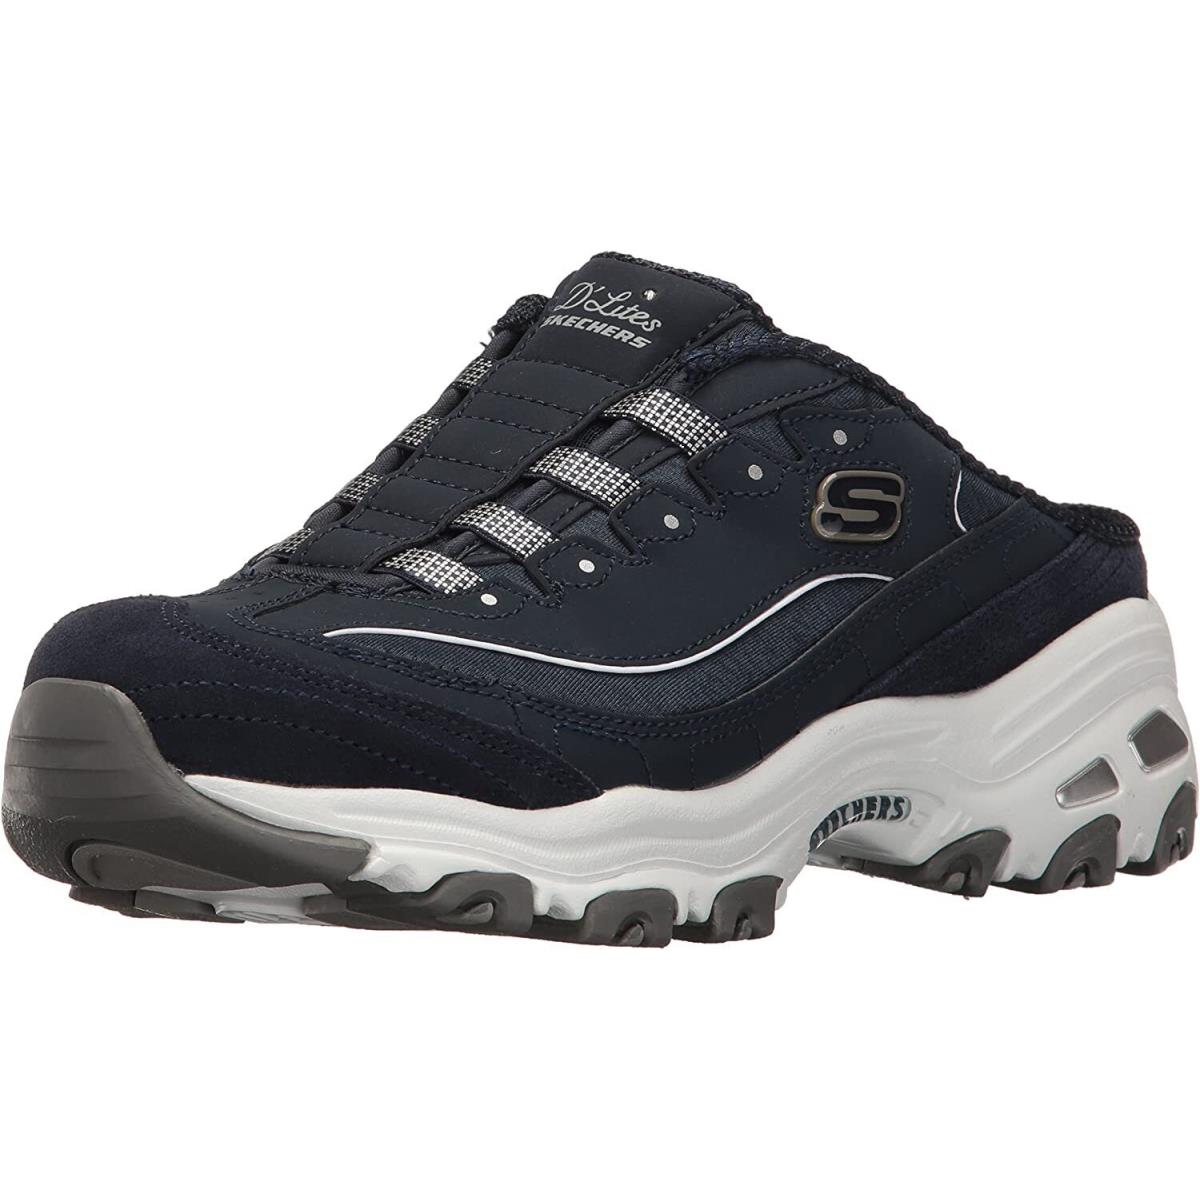 Skechers D`lites Women`s Comfort Slip-on Shoes Mule Memory Foam Sport Sneakers Navy/White